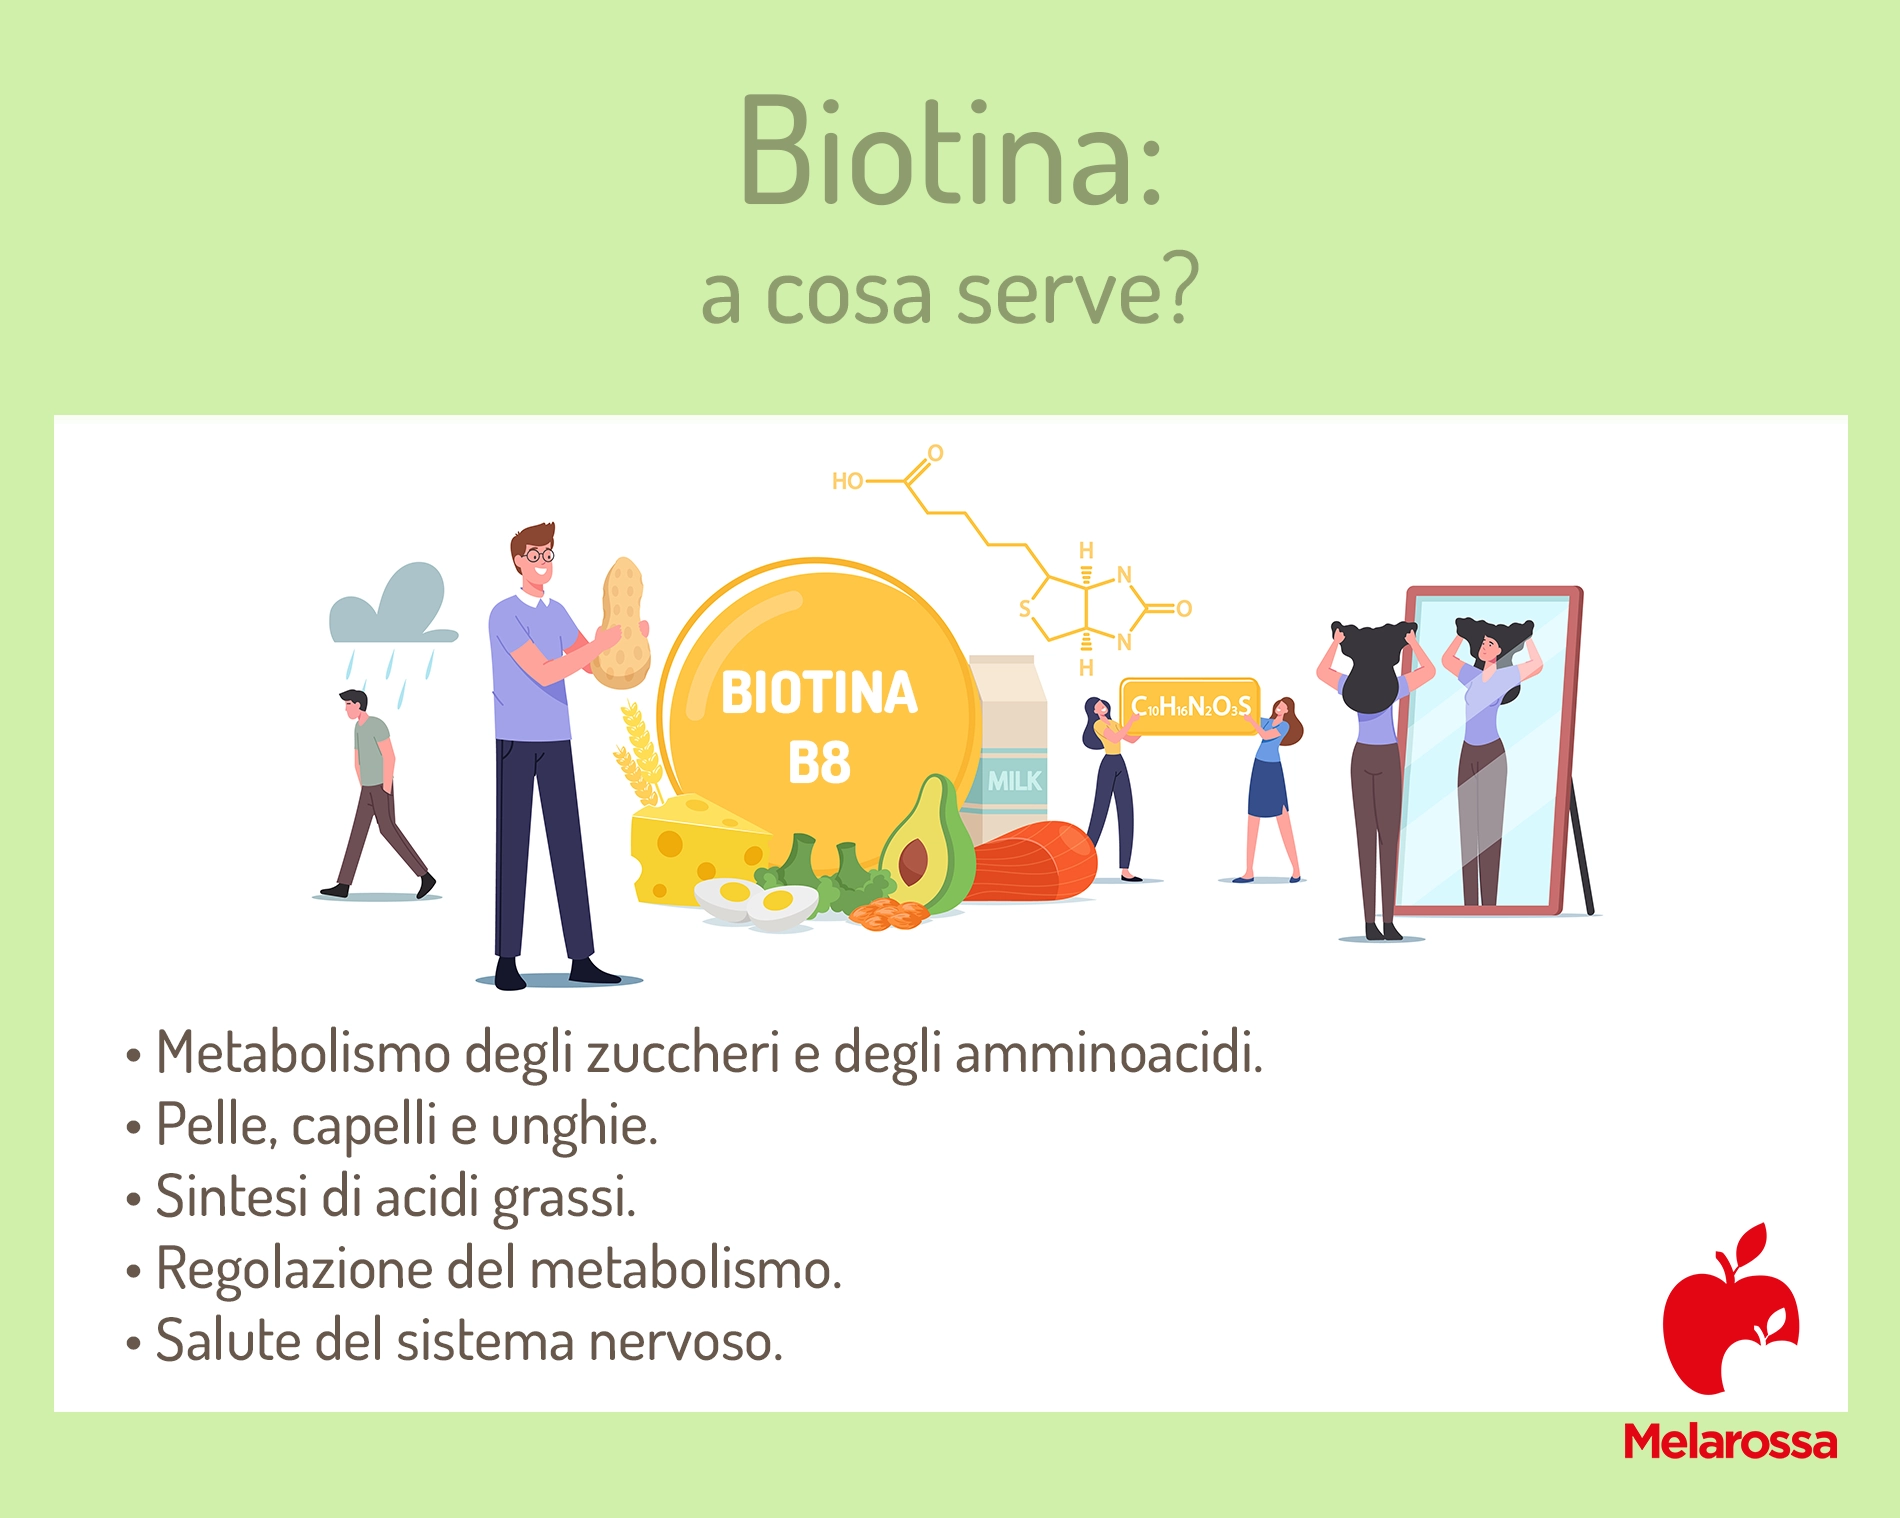 biotina: a cosa serve?